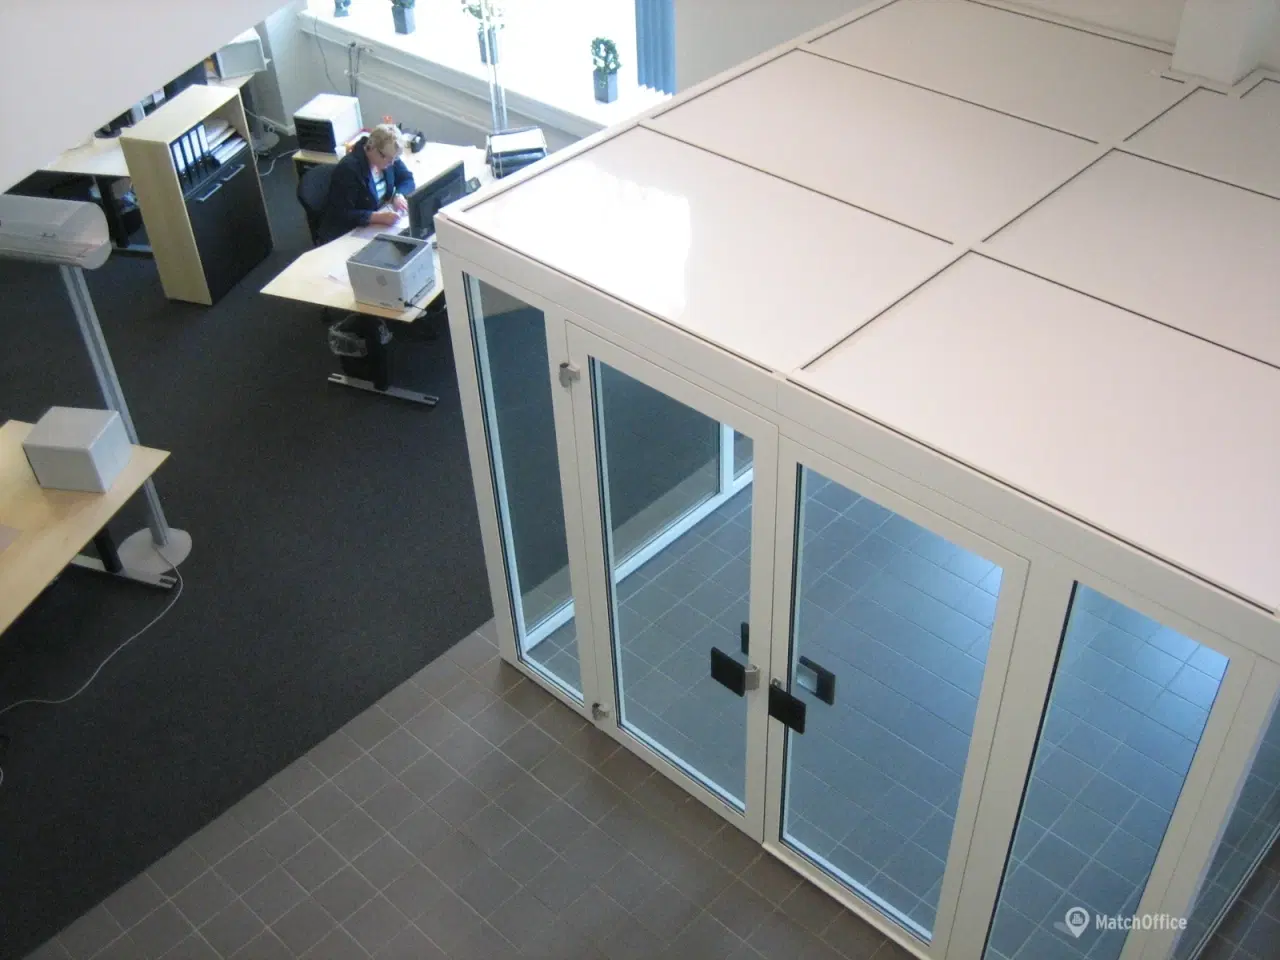 Billede 20 - Nyrenoverede kontorlokaler og logistik-/produktionshaller med god loftshøjde